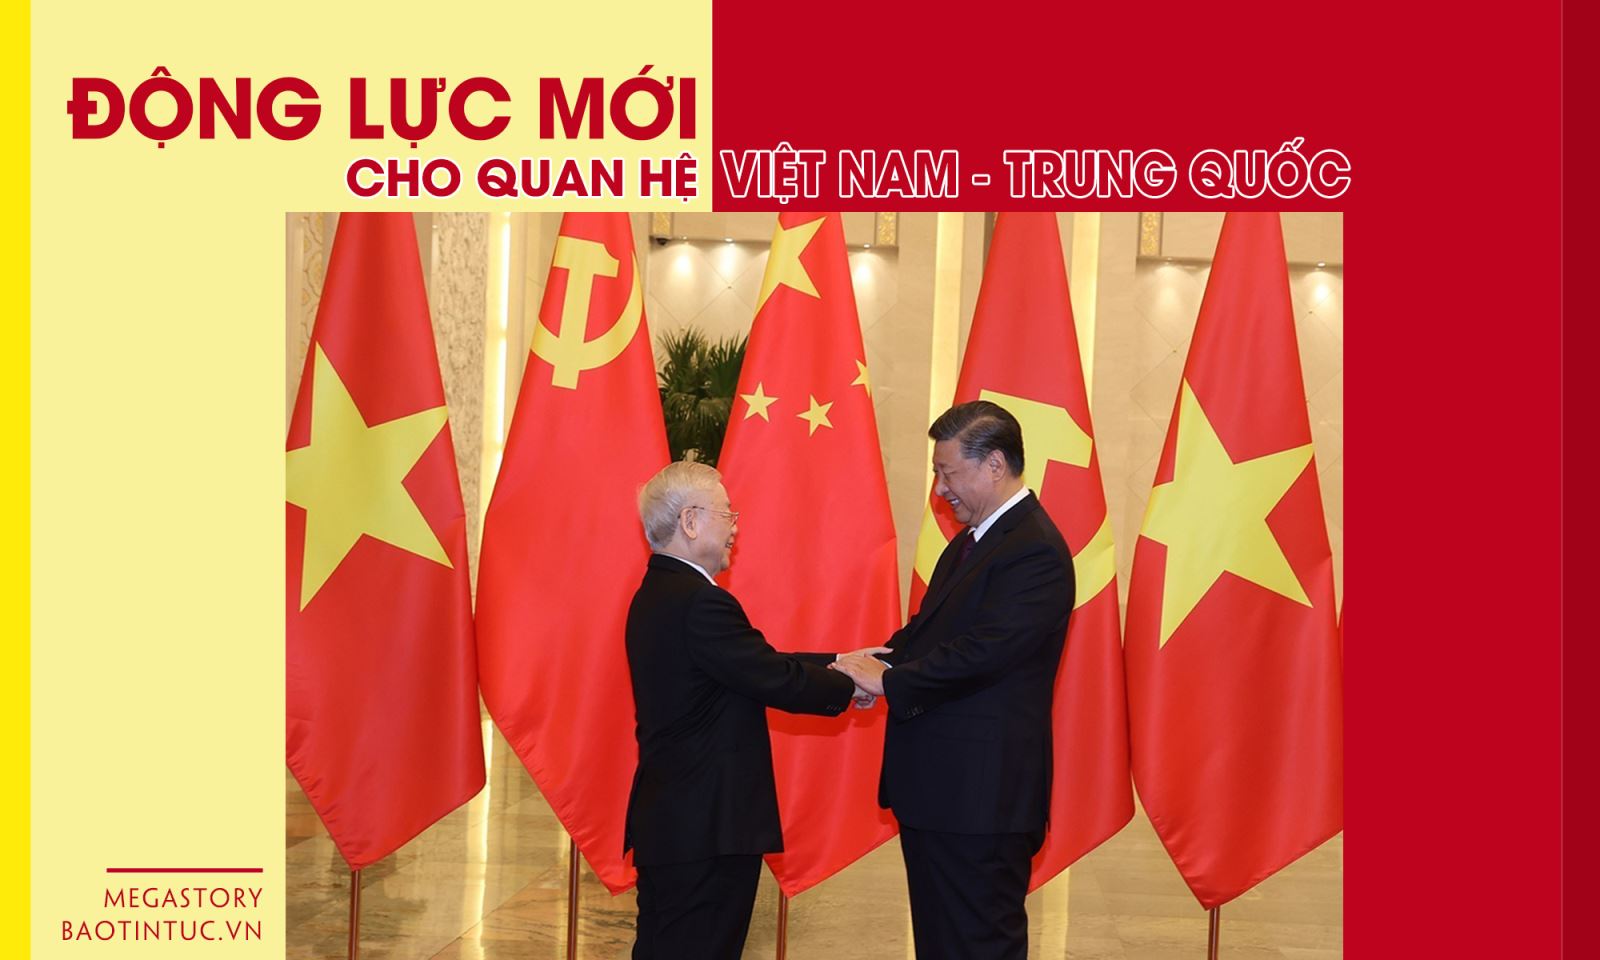 Quan hệ Việt Nam - Trung Quốc: Quan hệ giữa Việt Nam và Trung Quốc đã đi đến một khởi đầu mới, làm căn cơ sở cho sự phát triển hòa bình và thịnh vượng trong khu vực. Hai nước đã thể hiện sự tôn trọng, cảm thông và đồng tình với các vấn đề nhân dân quan trọng, giúp cải thiện tình hình kinh tế, xã hội và đưa ra các giải pháp nhằm bảo vệ lợi ích quốc gia.